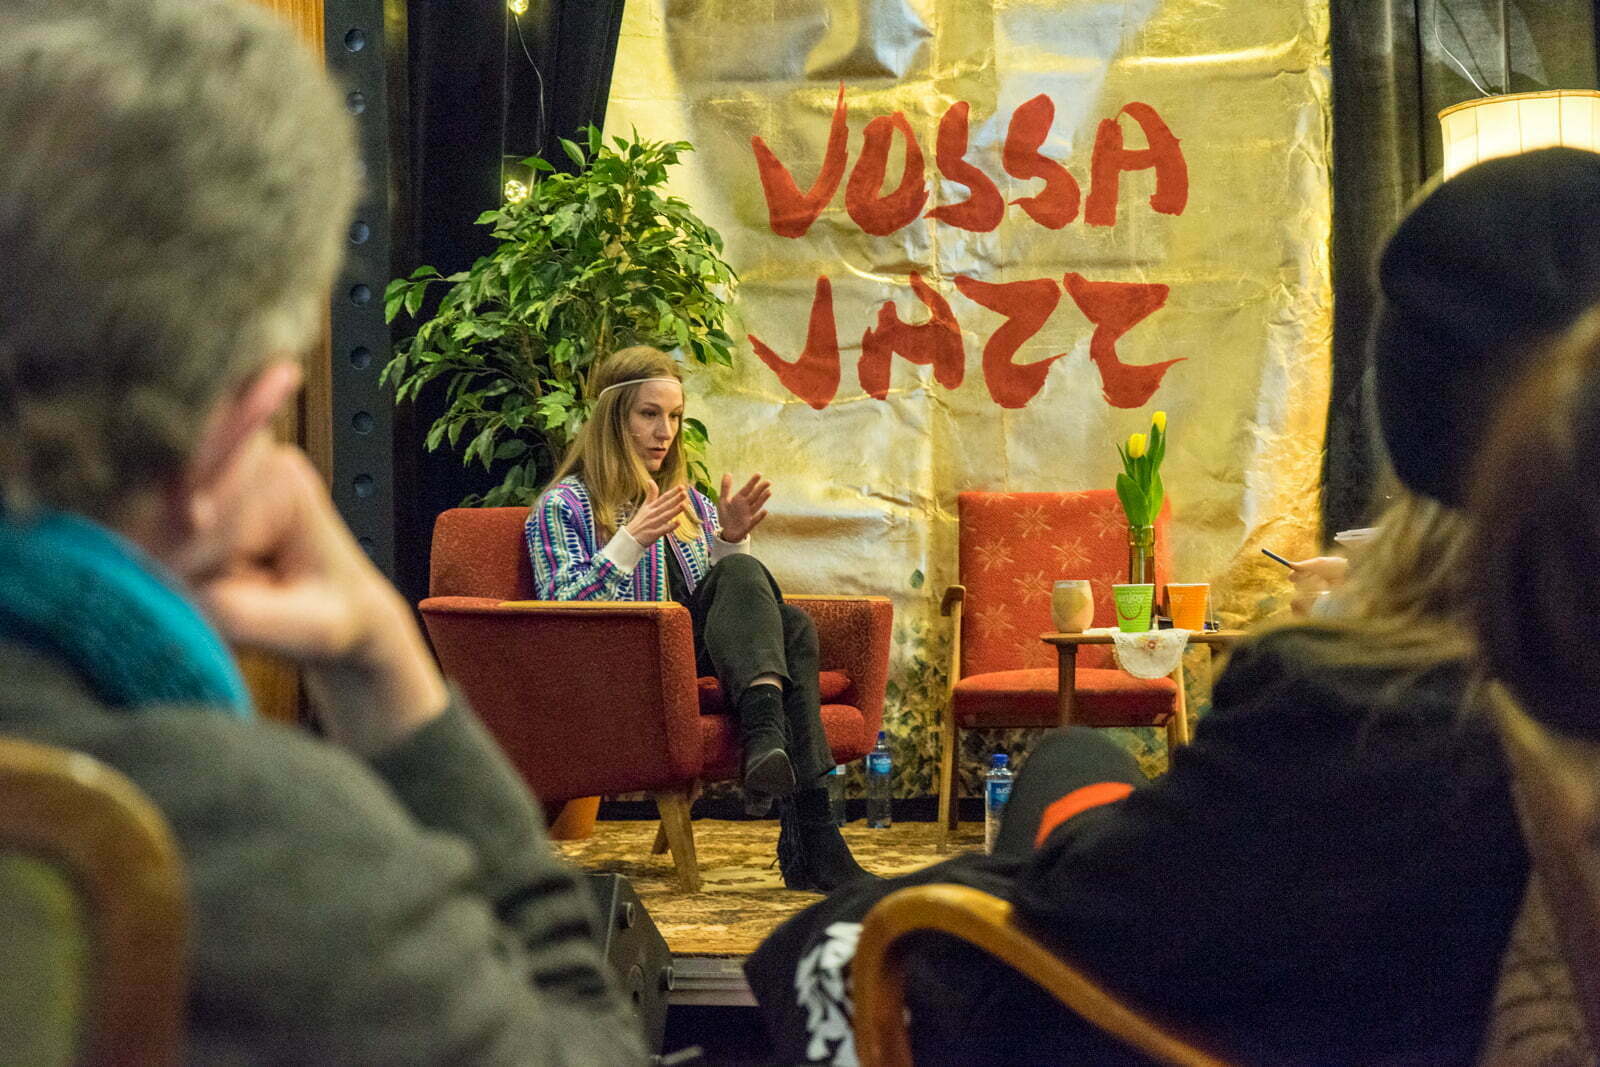 Hedvig Mollestad, Jazznytt med Audun Vinger (Foto: Vossa Jazz/Lars Finborud)